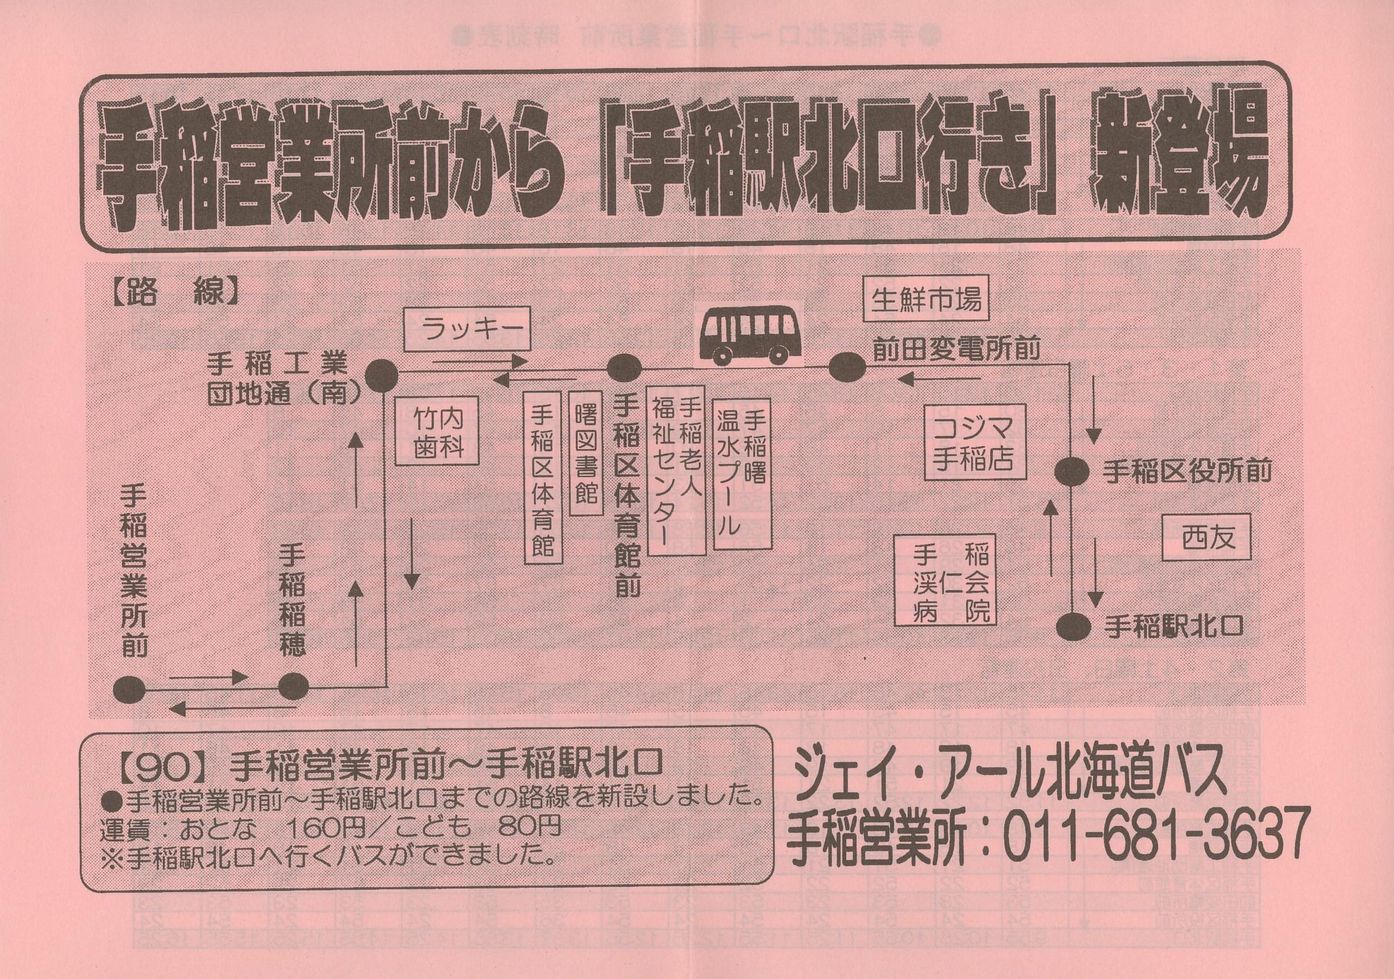 2001-12-01改正_ジェイ・アール北海道バス_[90]運行開始チラシ表面